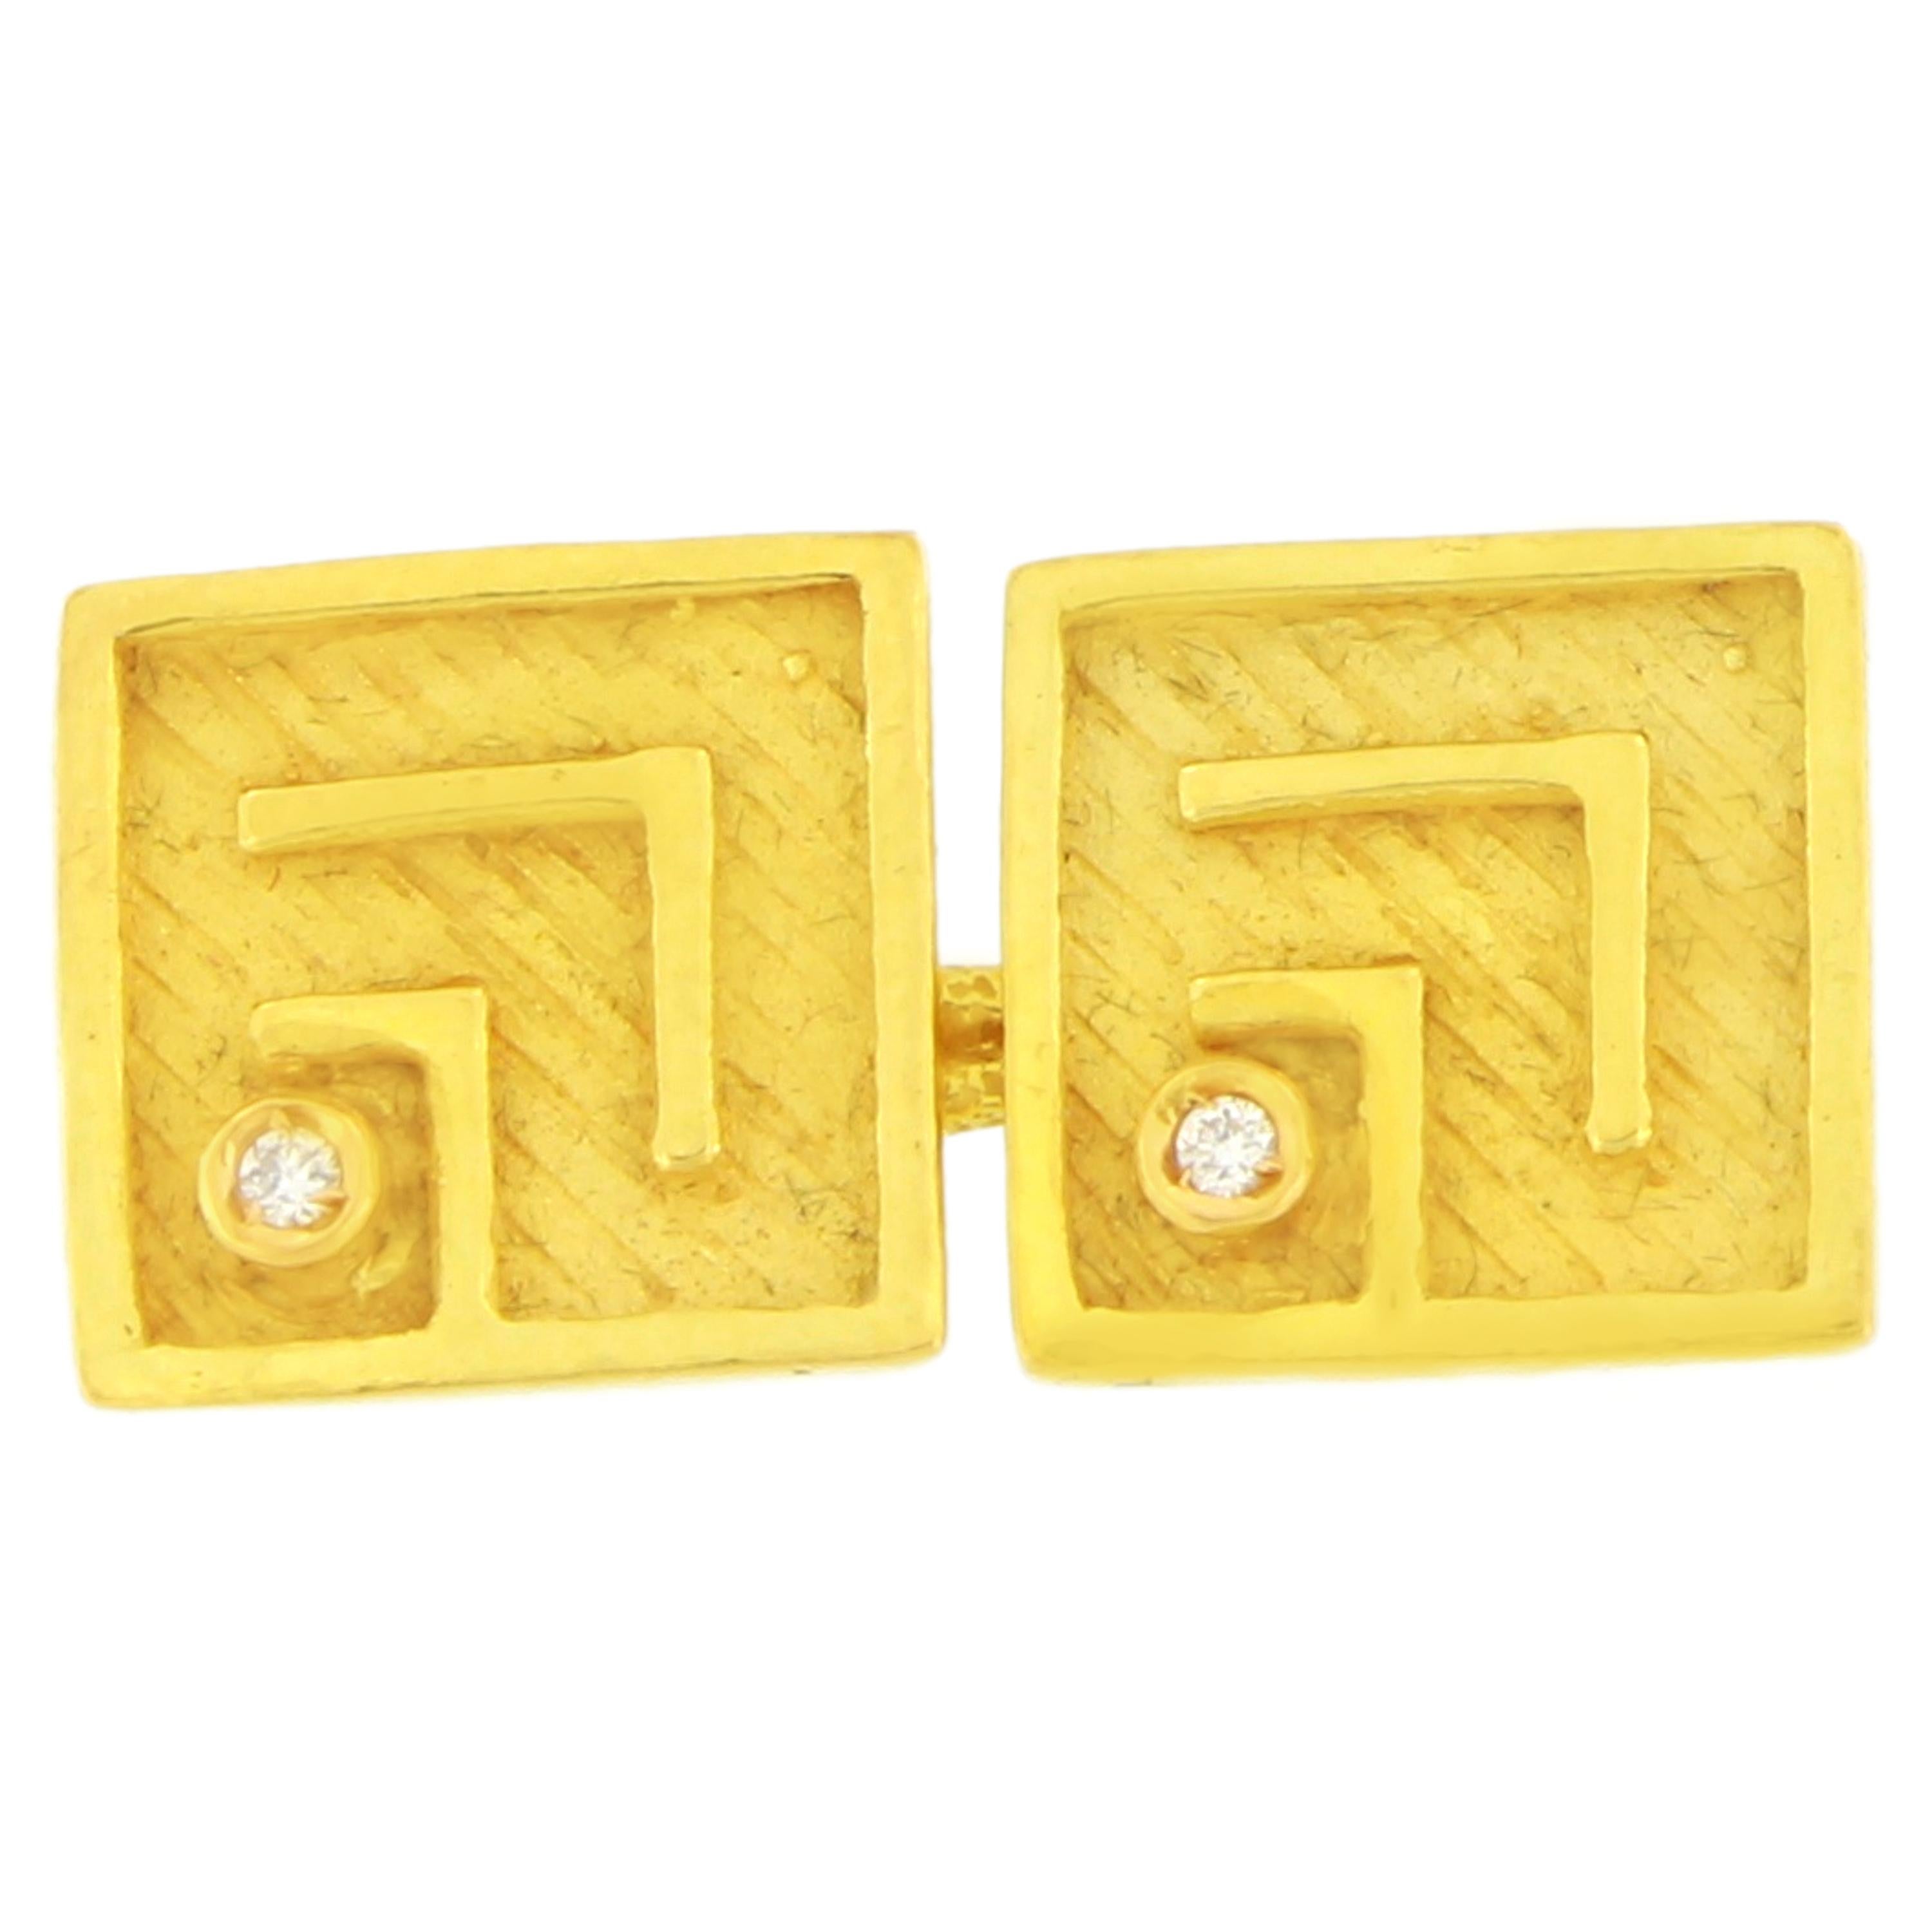 Sacchi Diamond Gemstone 18 Karat Satin Yellow Gold Square Chain Link Cufflinks (Zeitgenössisch)